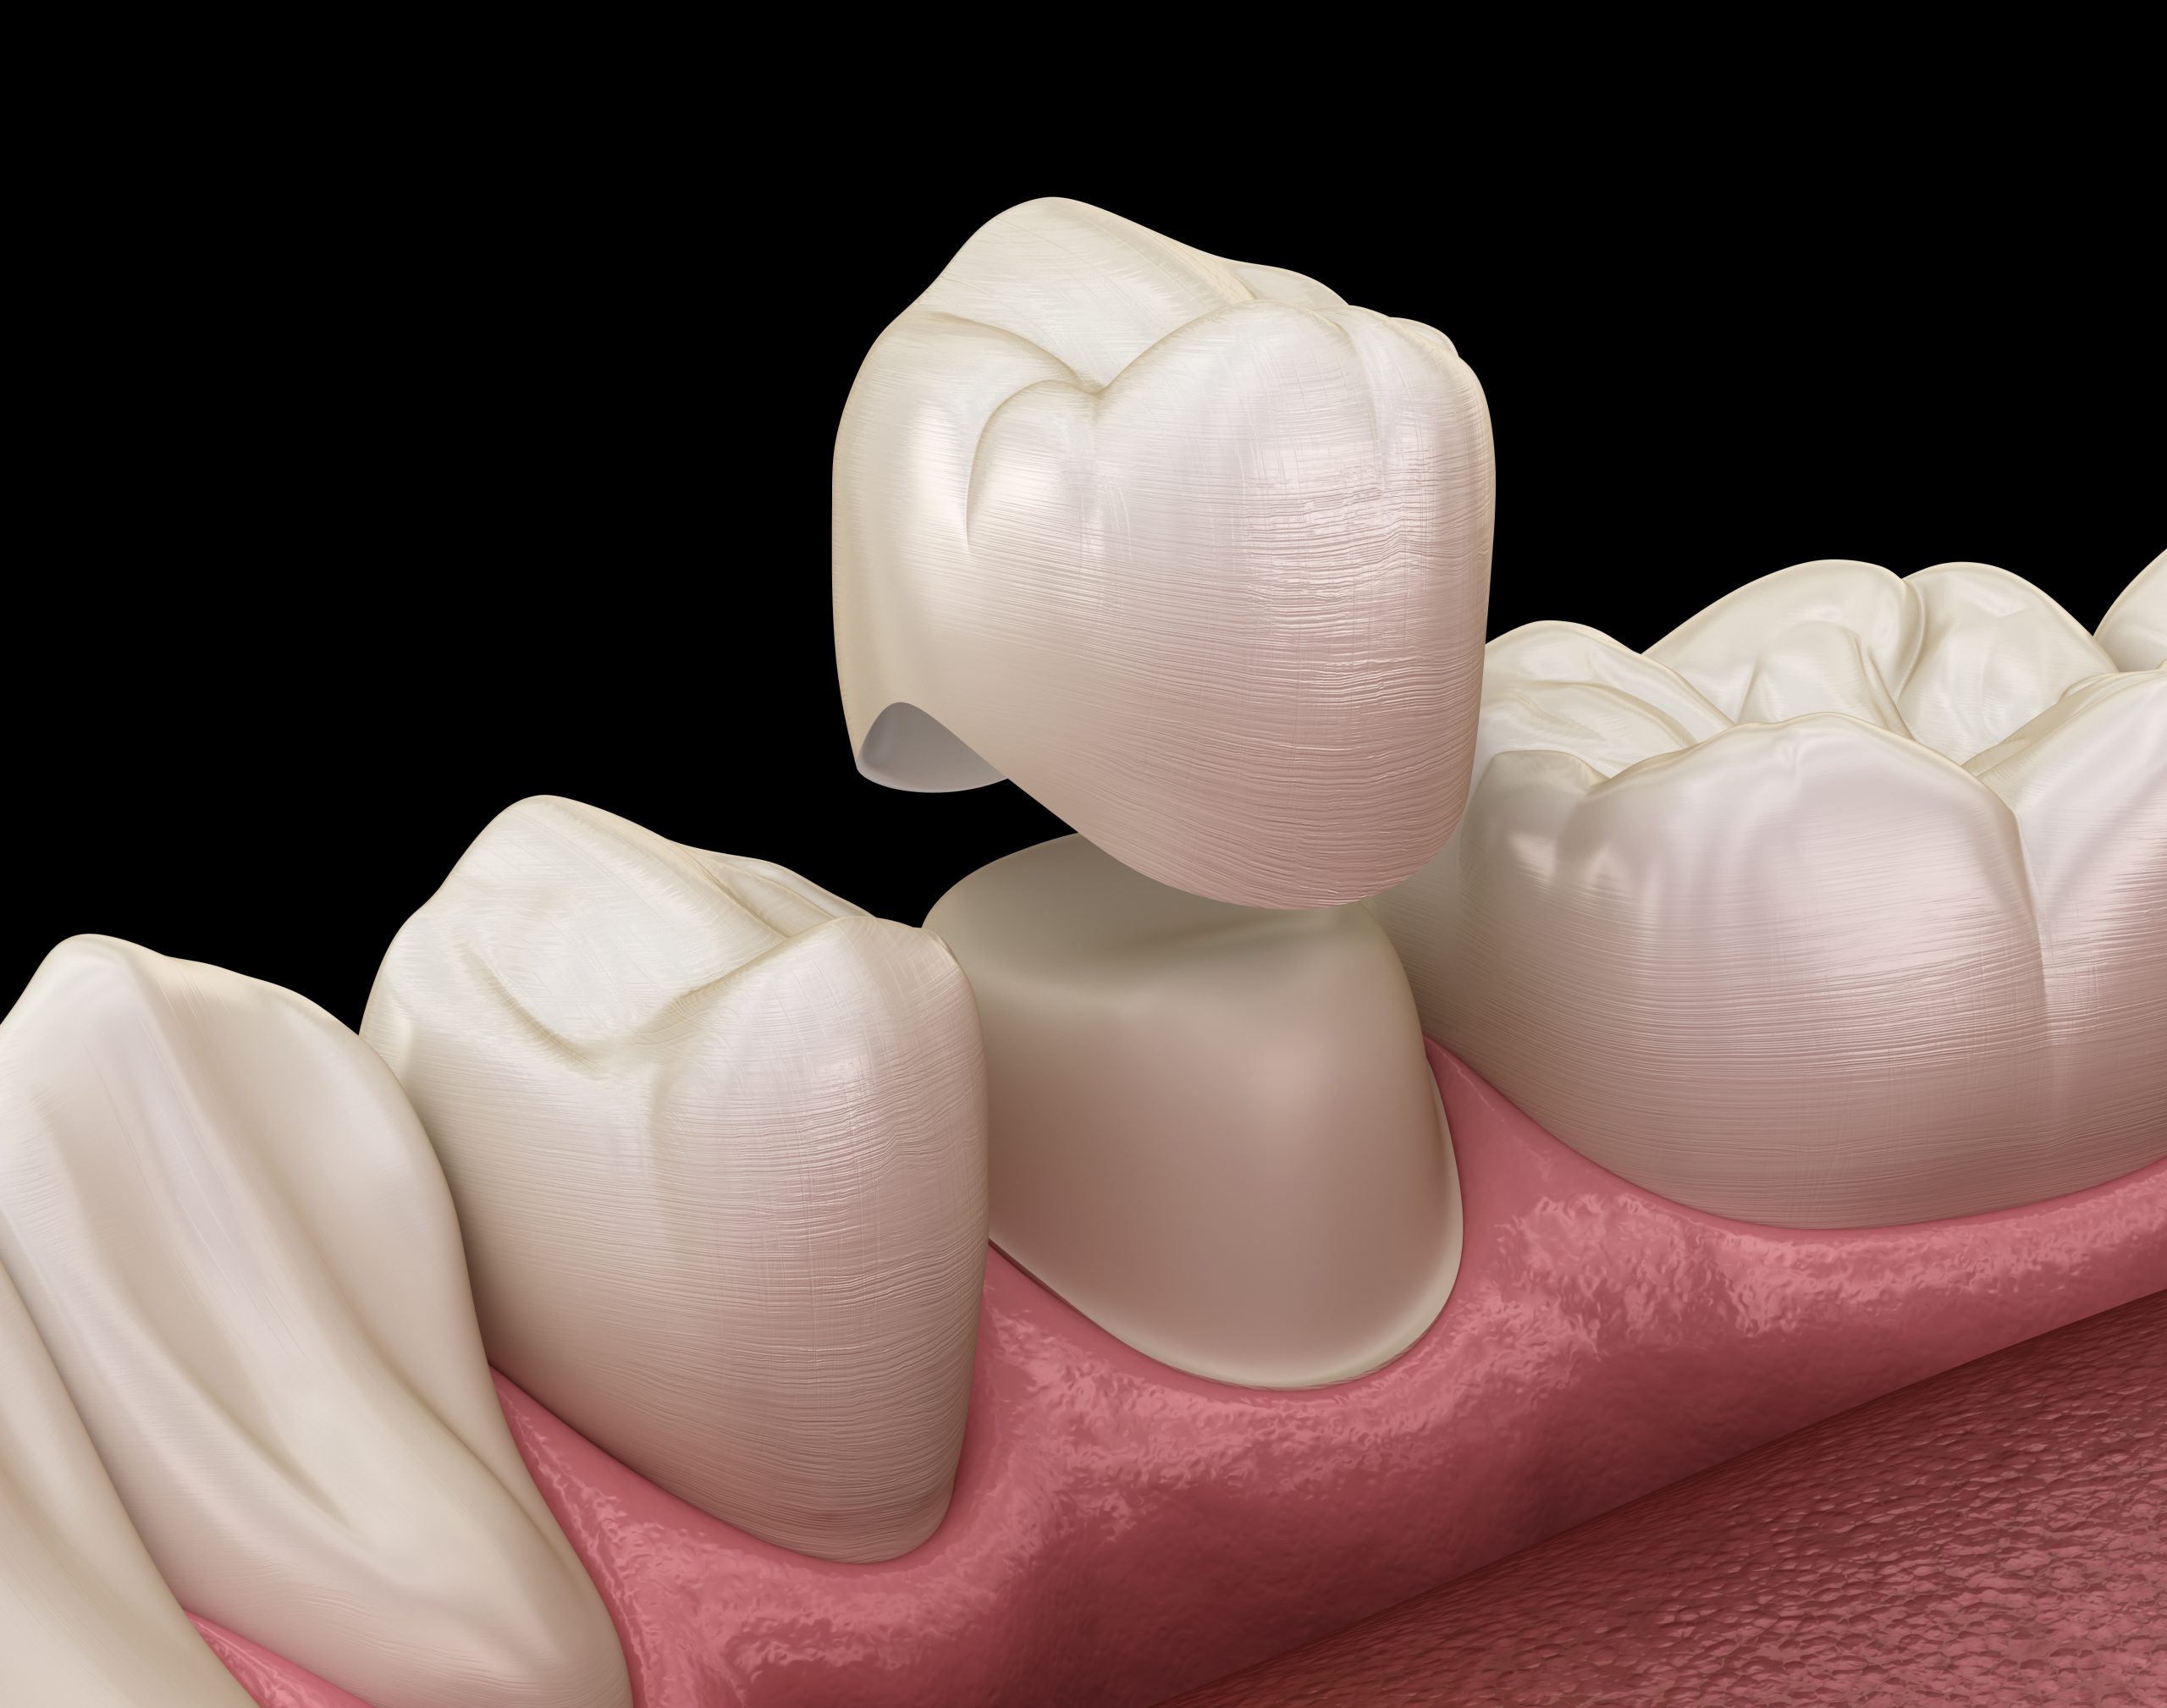 Disadvantages of dental crowns